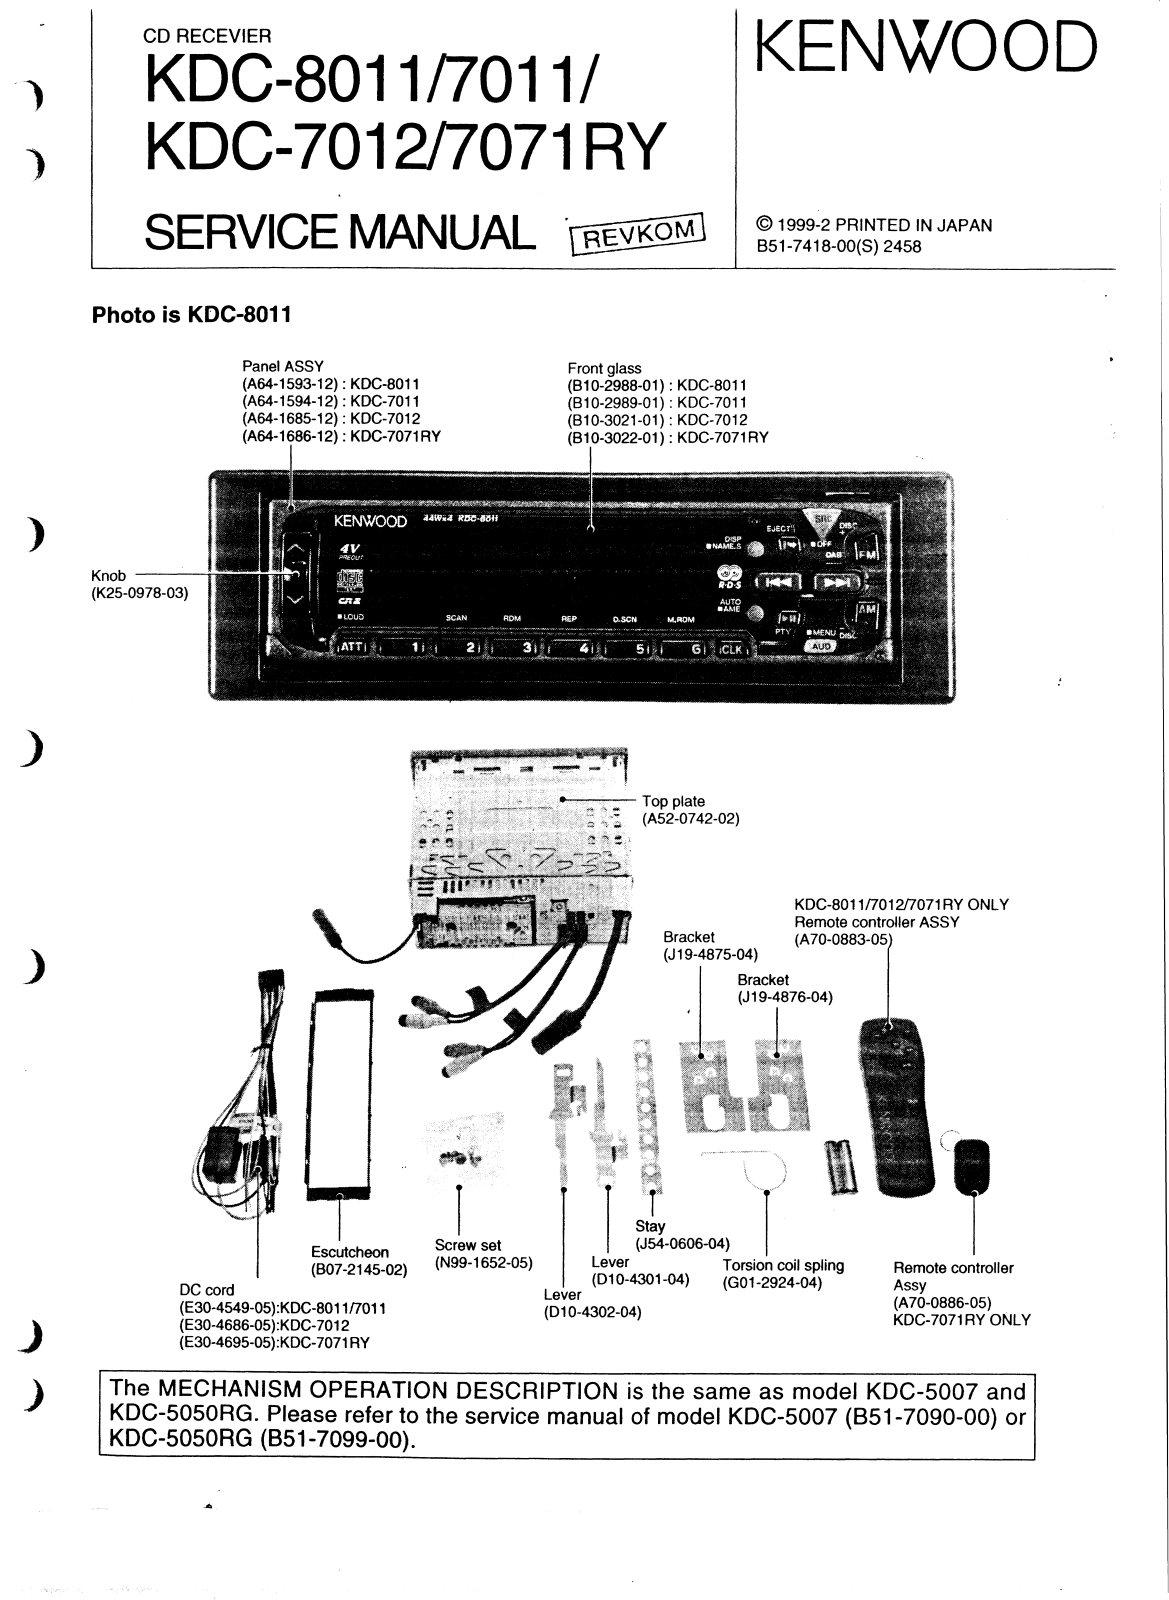 Kenwood KDC-8011, KDC-7012, KDC-7011, KDC-7071-RY Service Manual